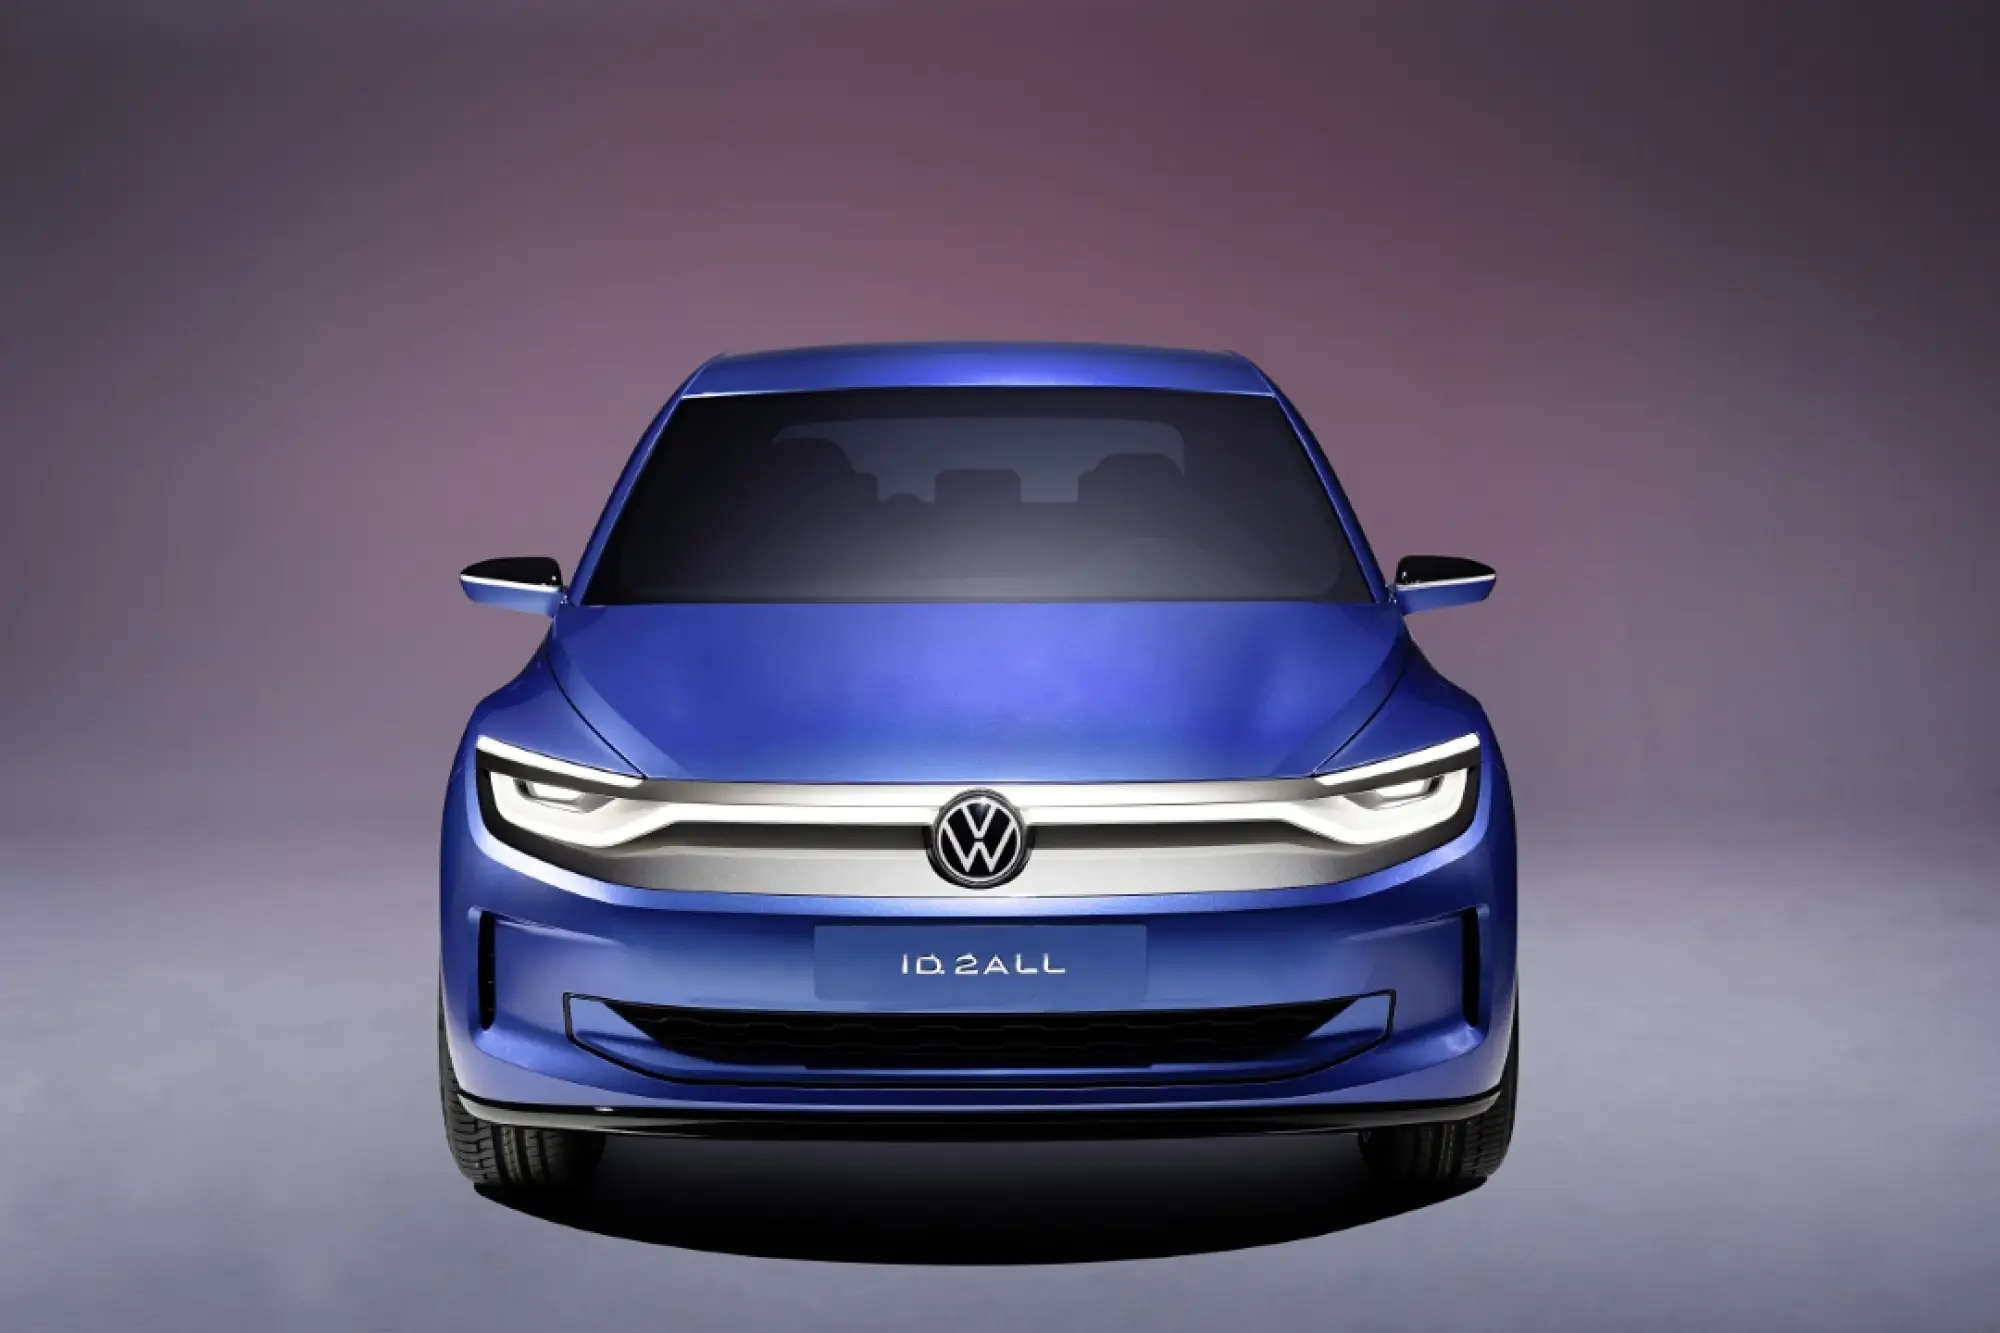 Volkswagen ID.2 all : concept - 4